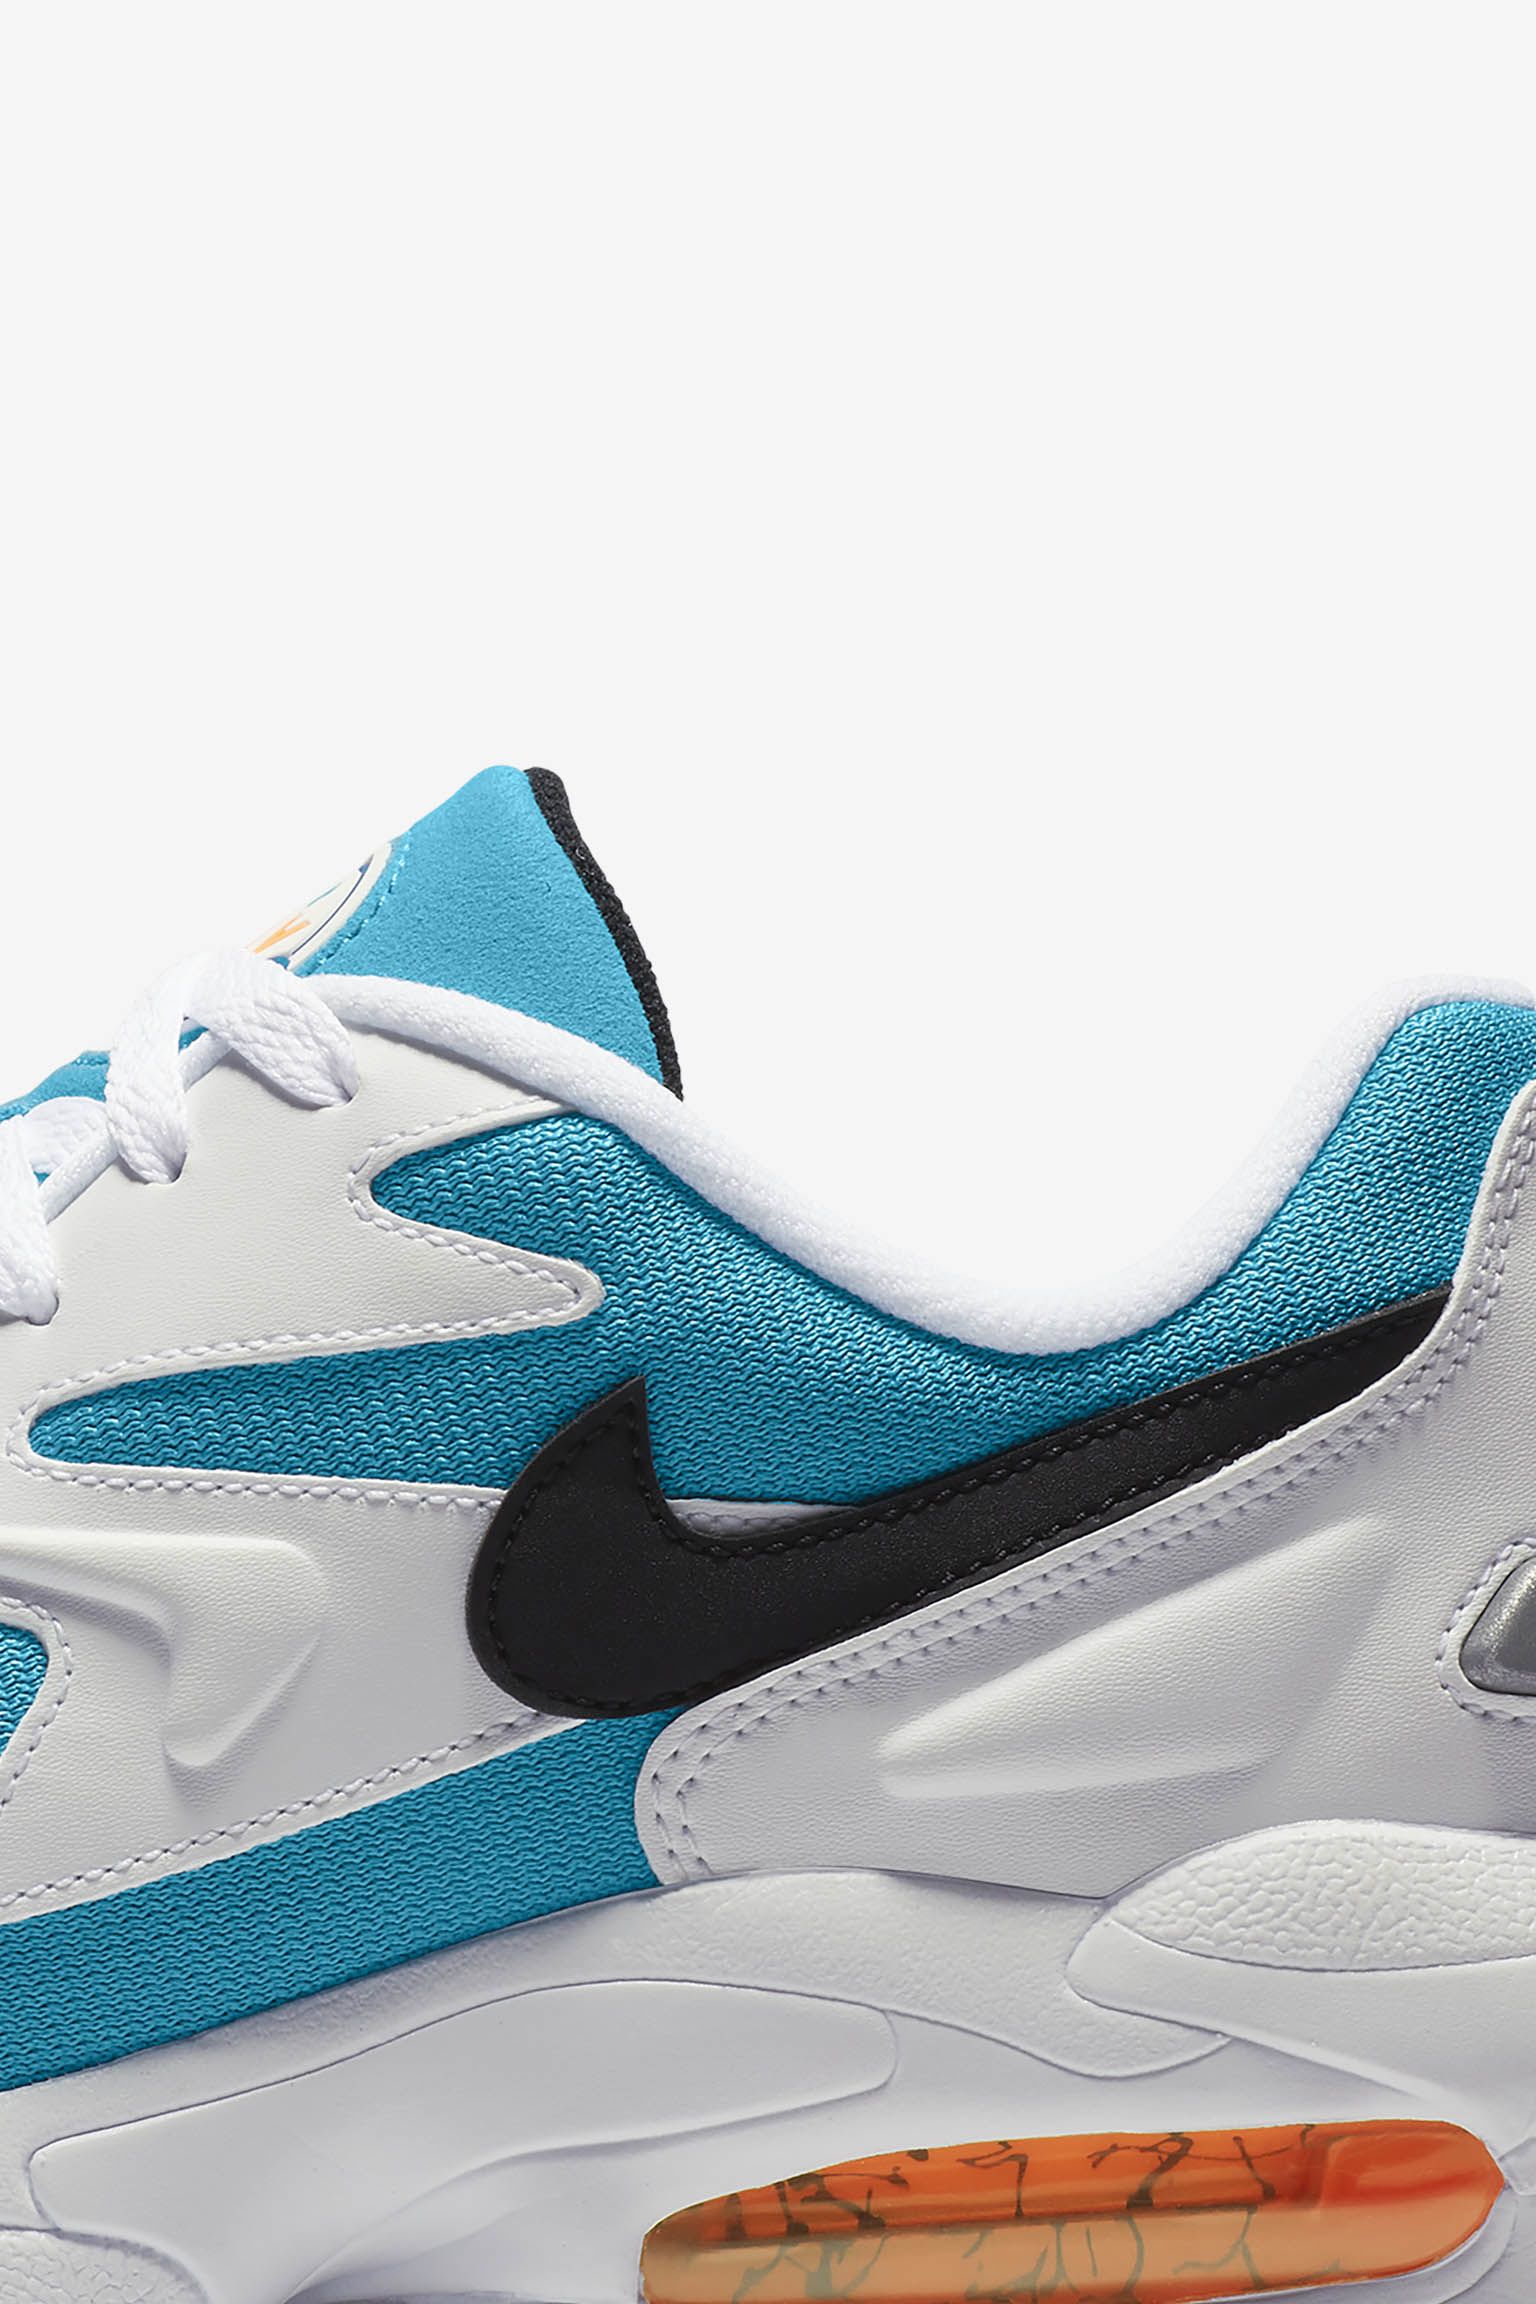 メンズ エア マックス2 ライト 'Blue Lagoon' 発売日. Nike SNKRS JP